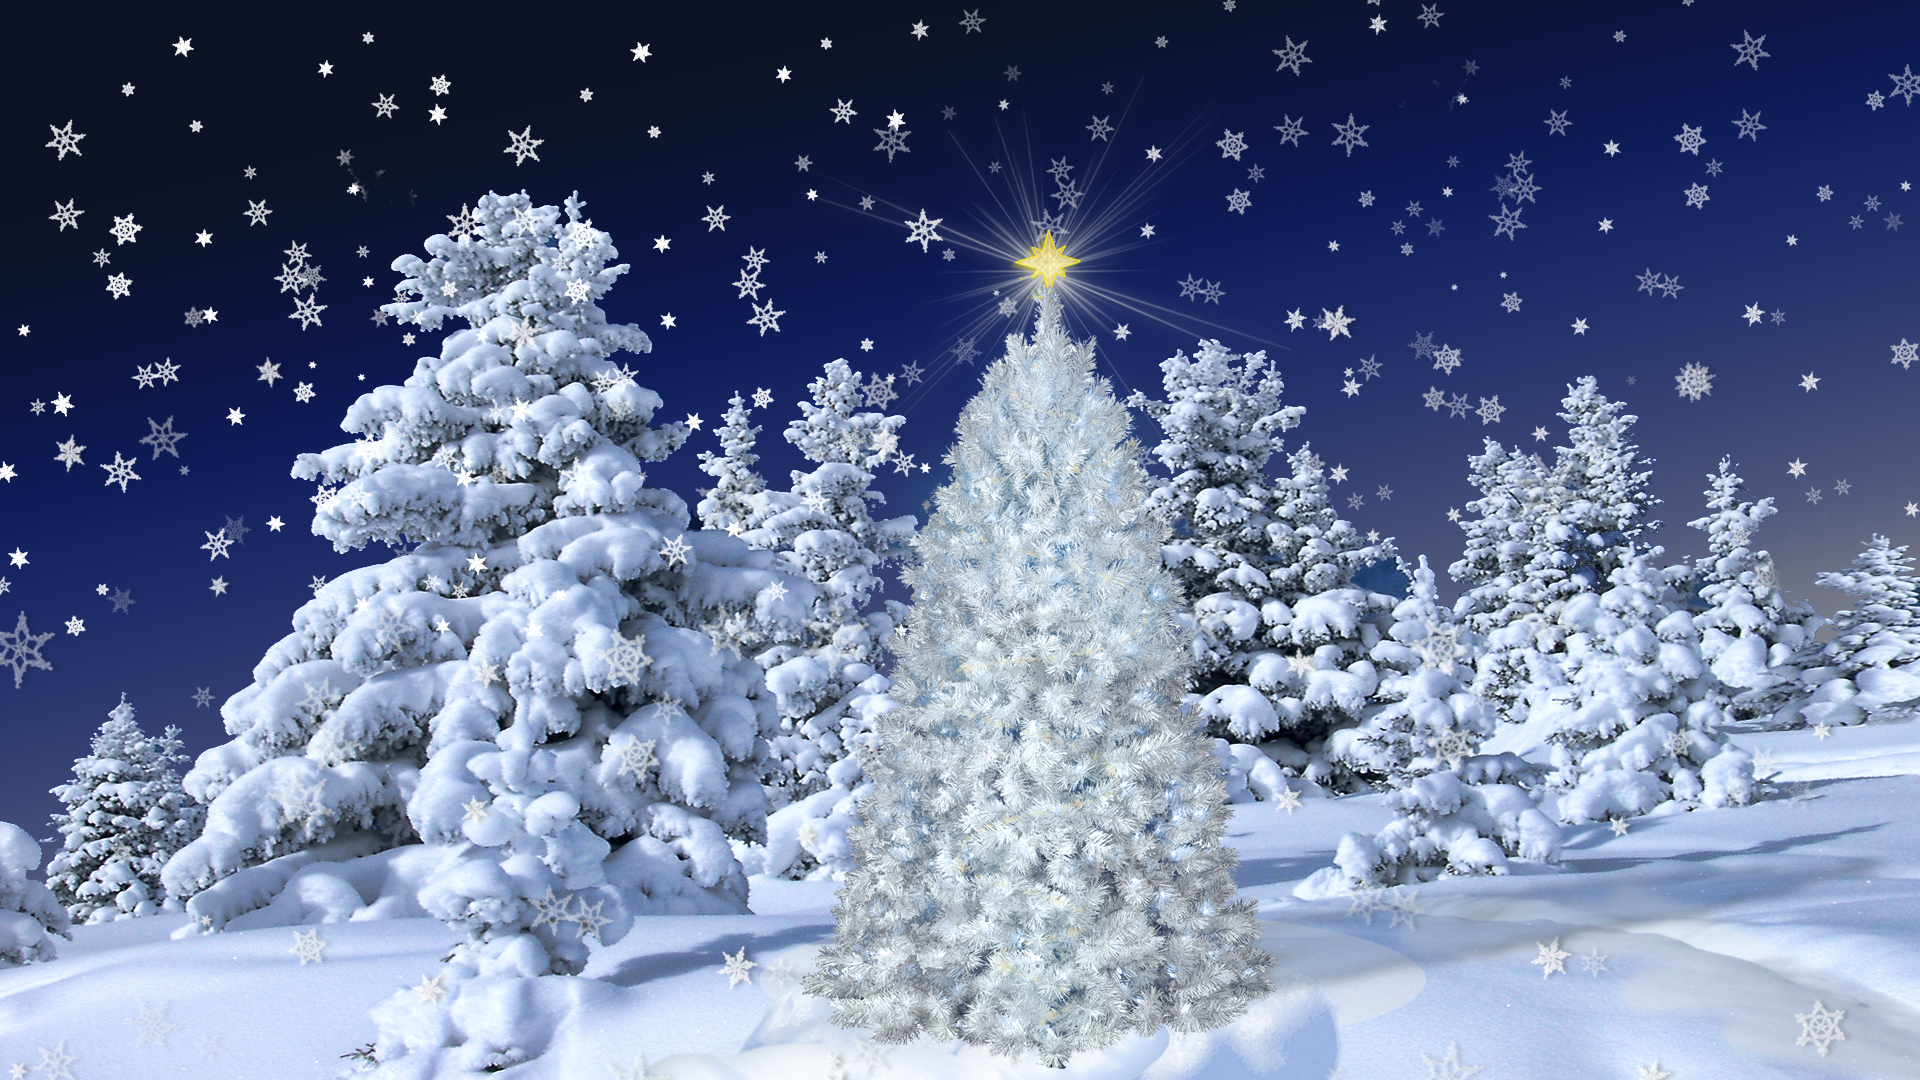 "White Christmas" by Frankief